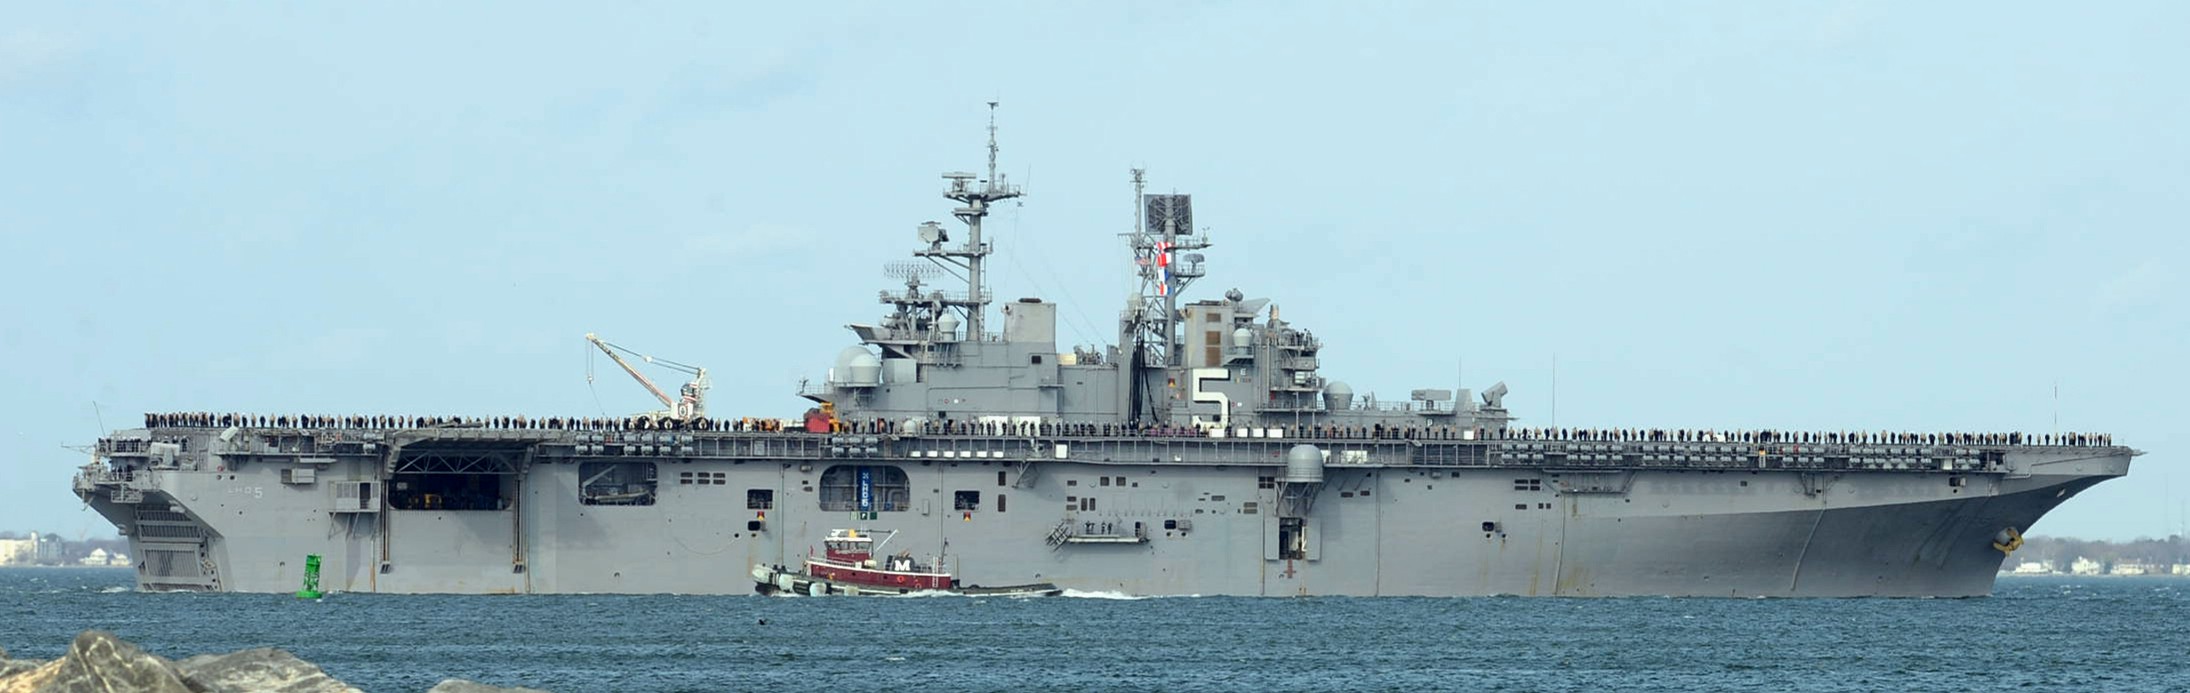 lhd-5 uss bataan wasp class amphibious assault ship dock landing helicopter us navy departing norfolk virginia 126